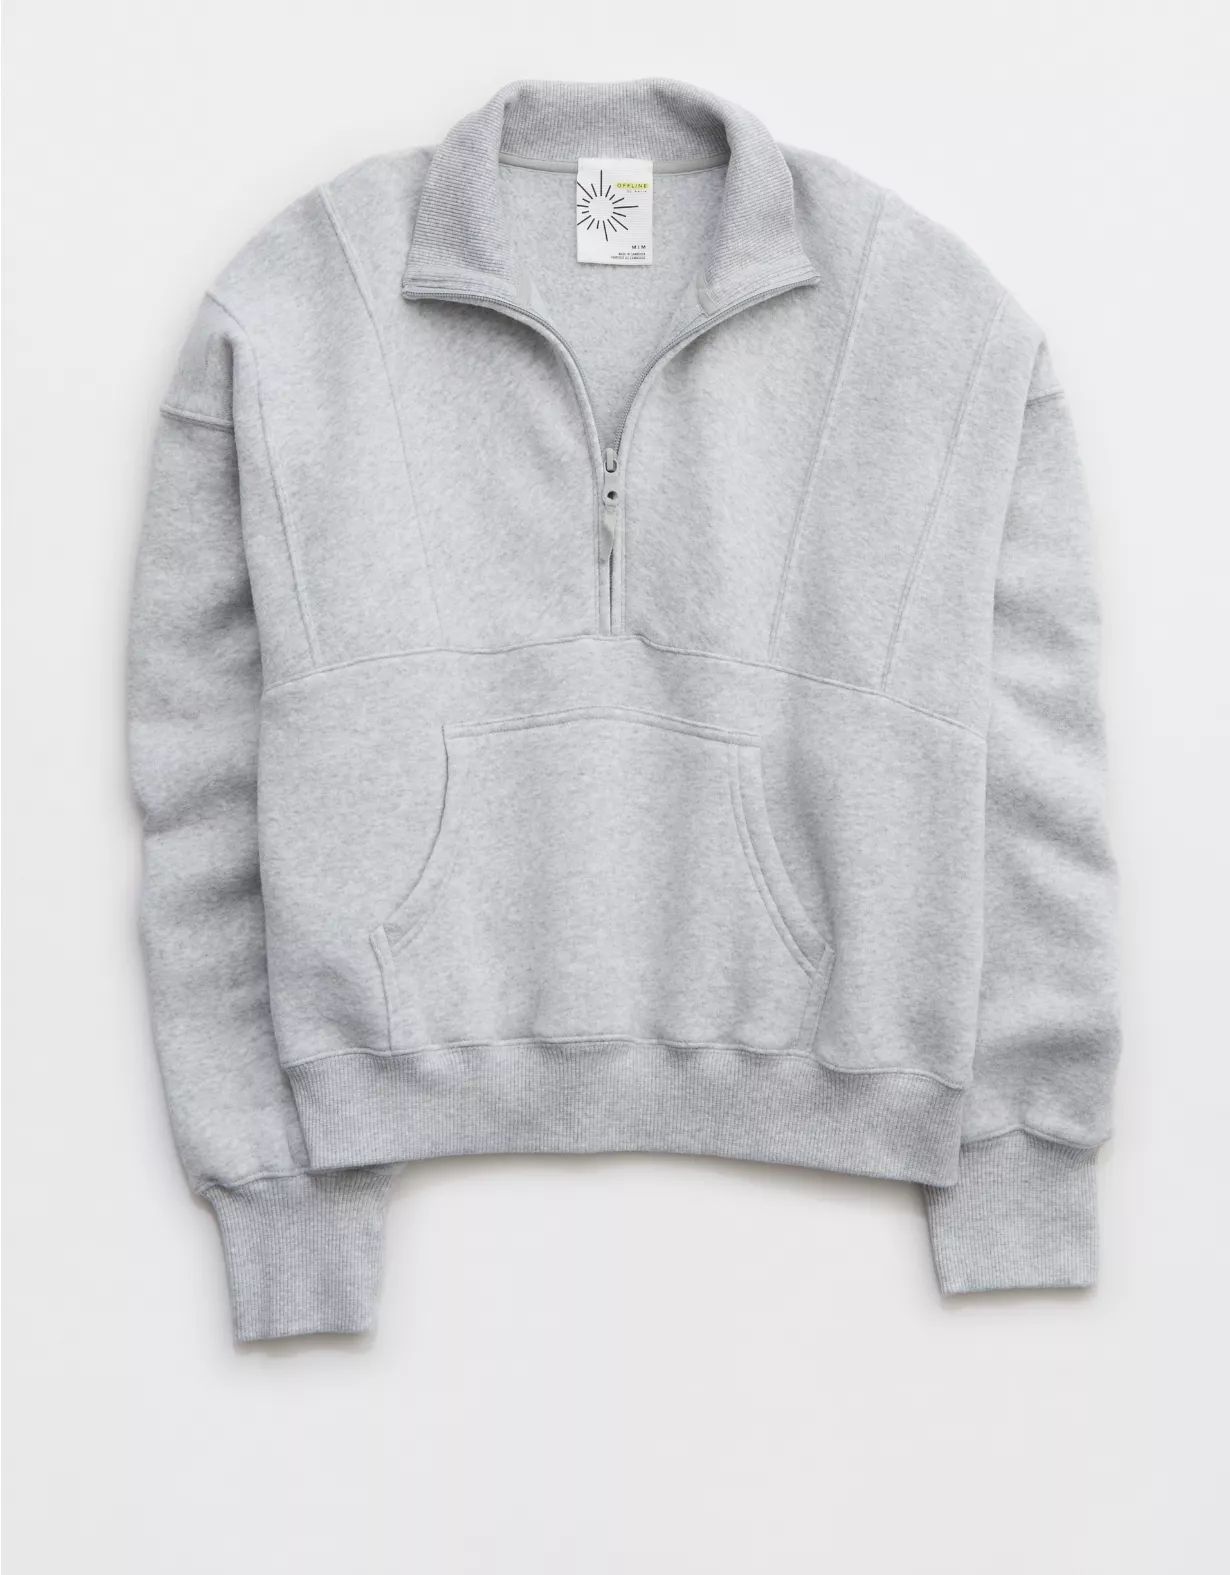 OFFLINE By Aerie Cloud Fleece Quarter Zip Sweatshirt | Aerie